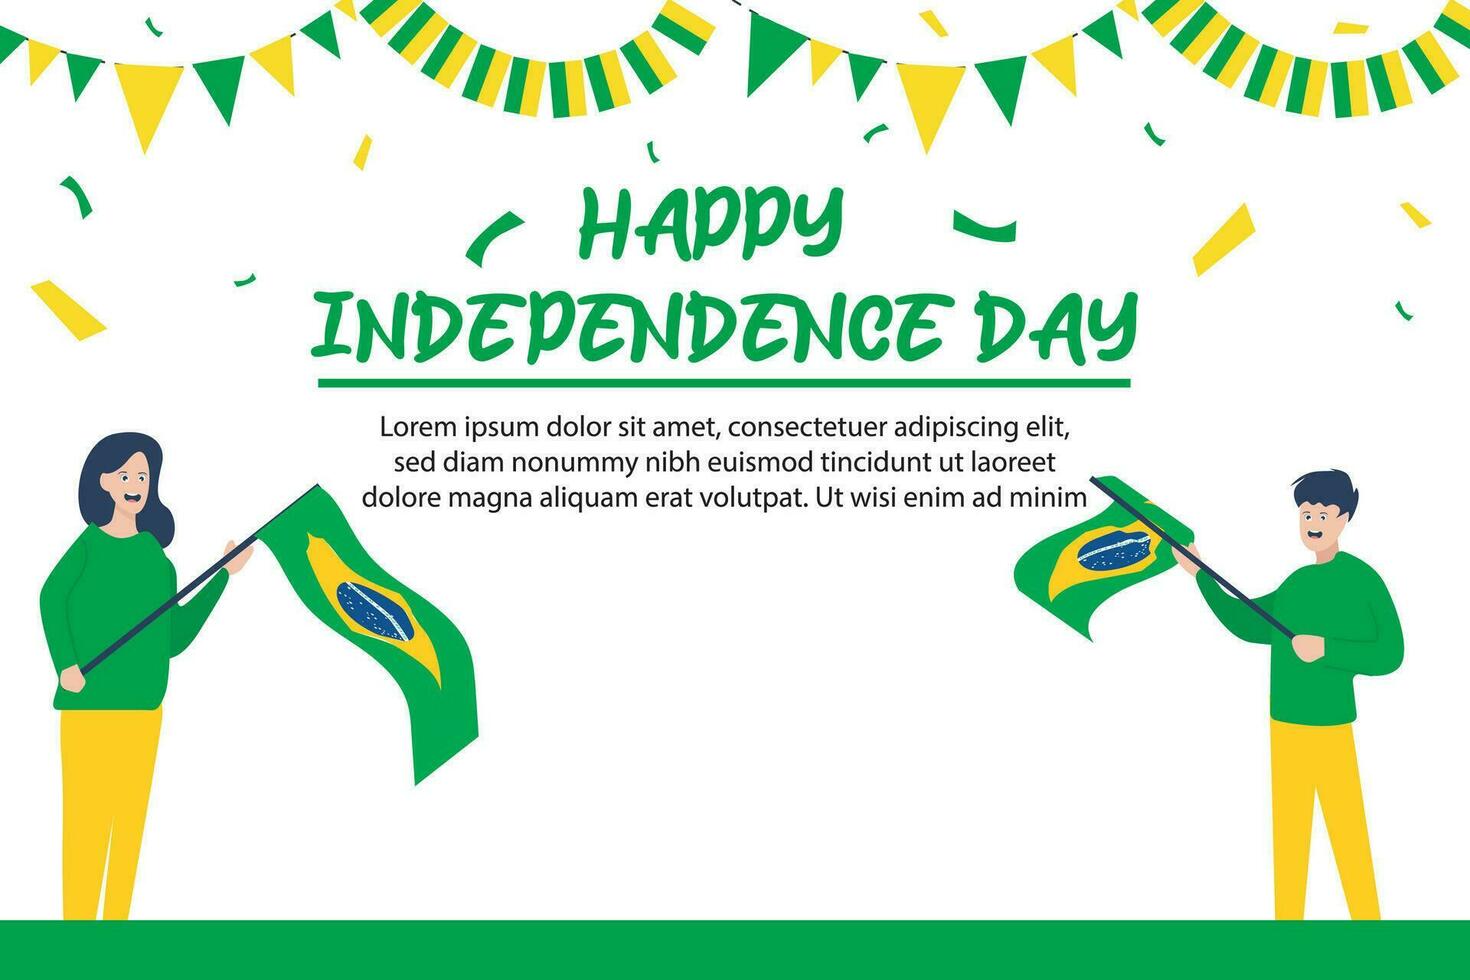 brasile indipendenza giorno 7 settembre celebrazione vettore modello striscione, sociale media inviare, aviatore o saluto carta con giallo verde tema e bandiera. vettore illustrazione